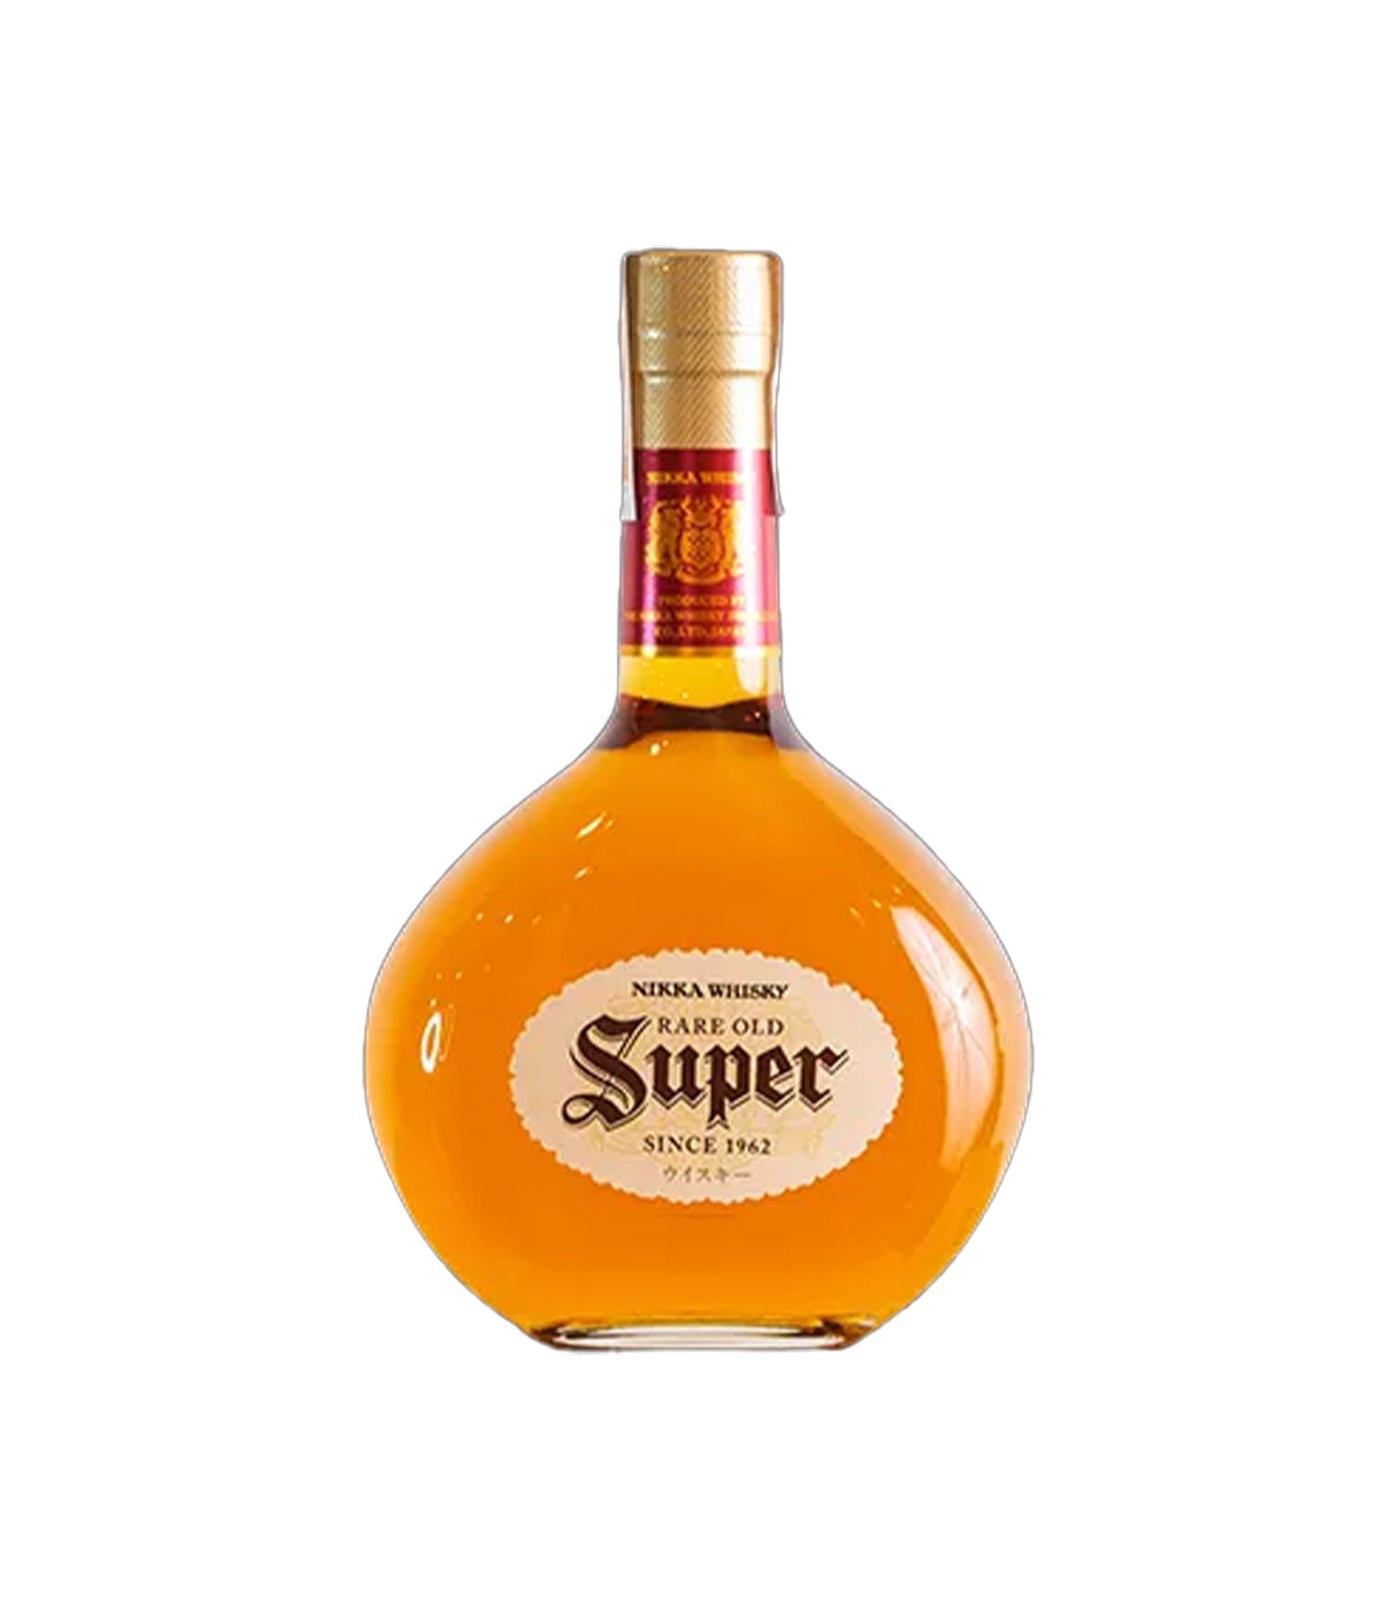 Nikka Super Rare Old Japanese Blended Whisky (70cl; 43%)